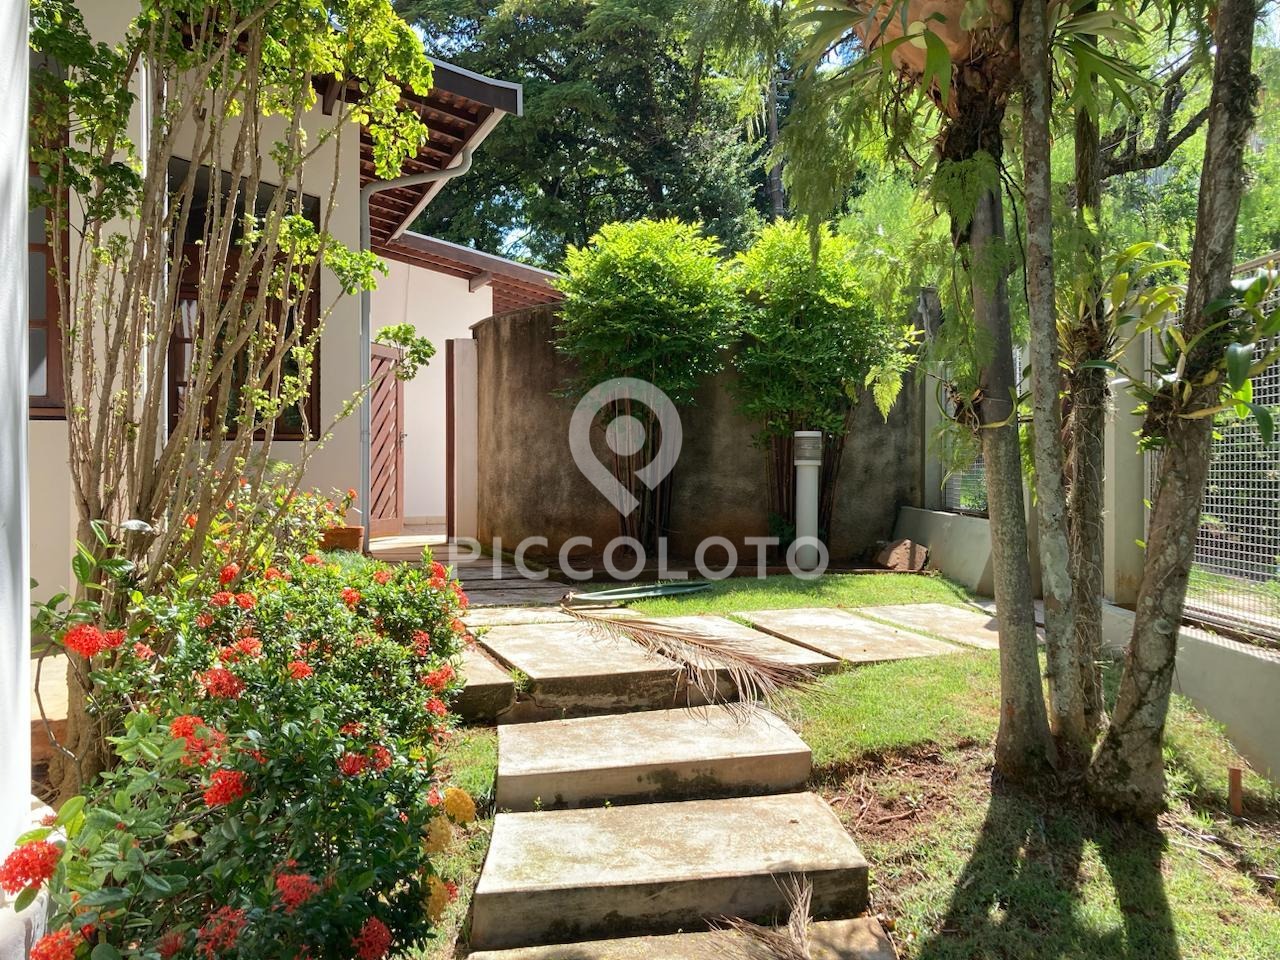 Piccoloto -Casa à venda no Parque Nova Campinas em Campinas